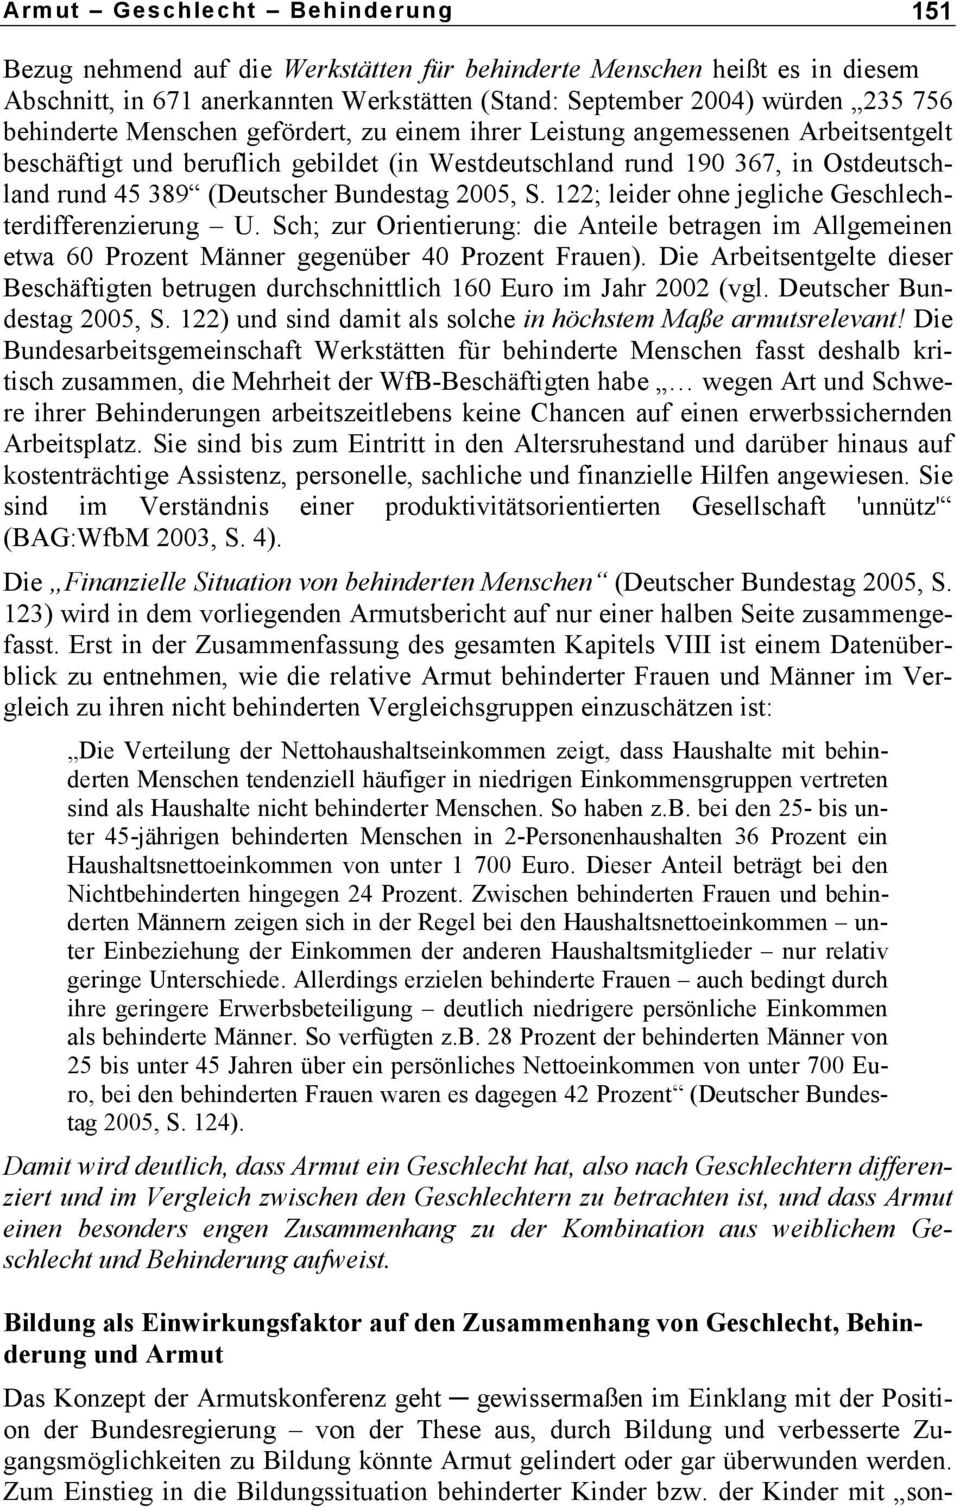 Bundestag 2005, S. 122; leider ohne jegliche Geschlechterdifferenzierung U. Sch; zur Orientierung: die Anteile betragen im Allgemeinen etwa 60 Prozent Männer gegenüber 40 Prozent Frauen).